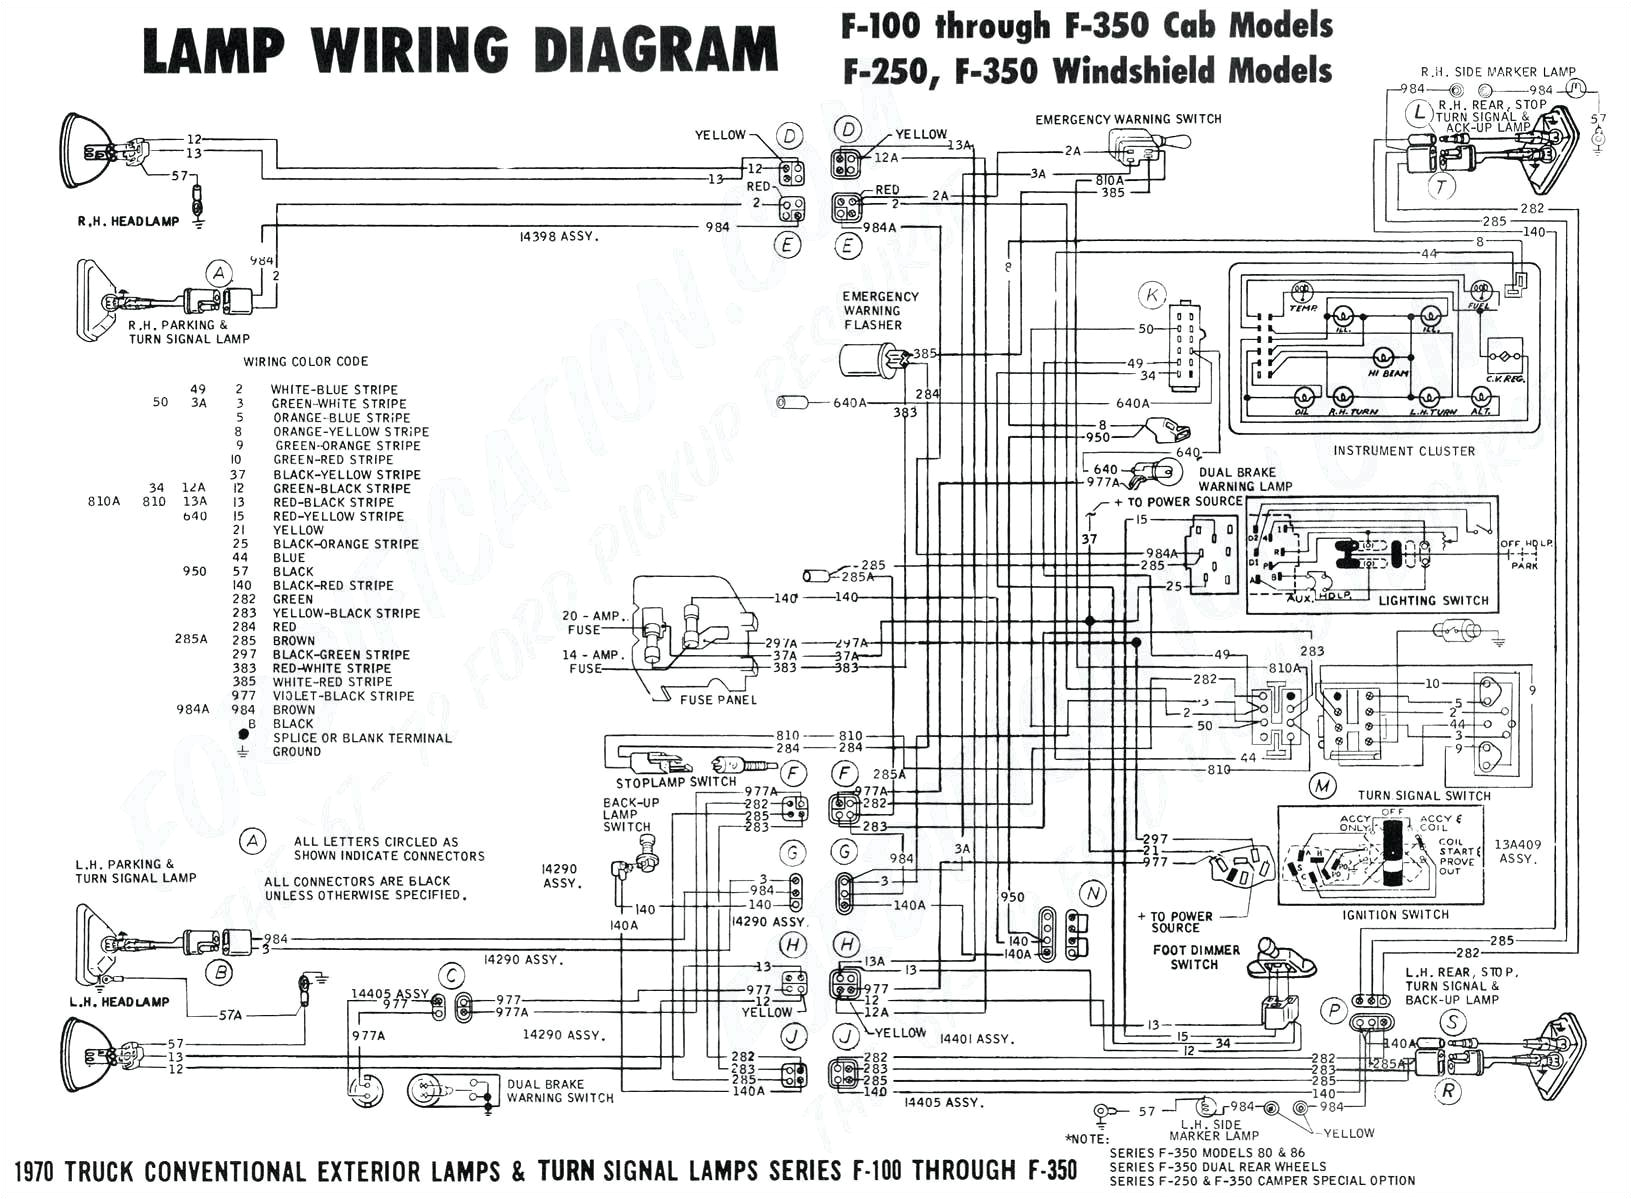 1987 mazda wiring hot wiring diagram name hot tub wiring diagram hot wire diagram